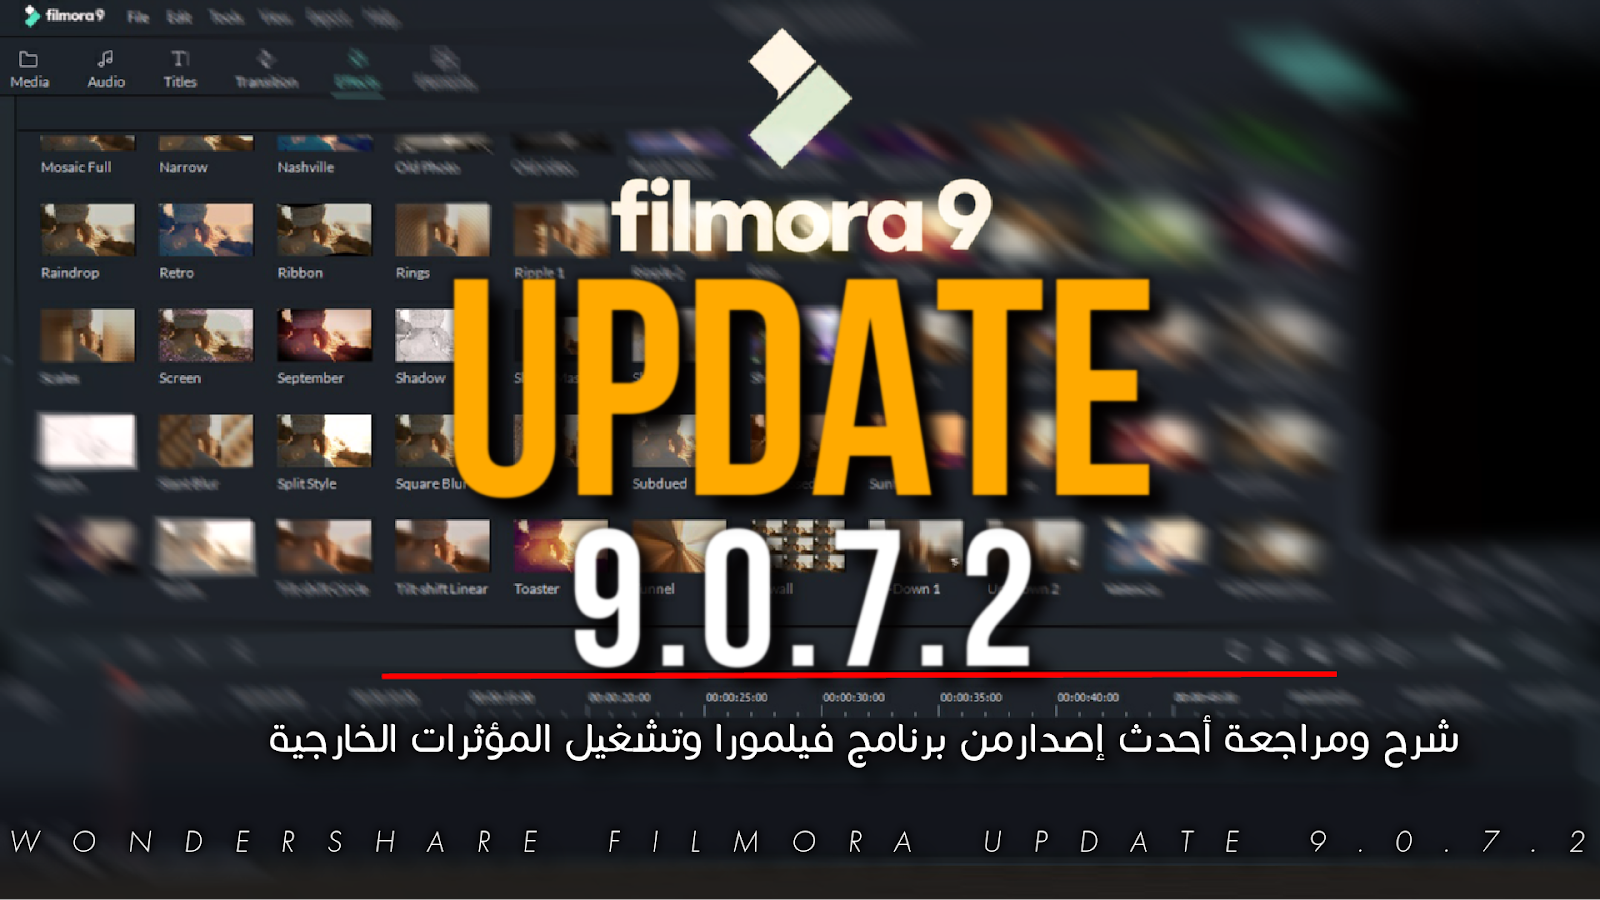 شرح ومراجعة أحدث إصدارمن برنامج فيلمورا Wondershare Filmora 9.0.7.2